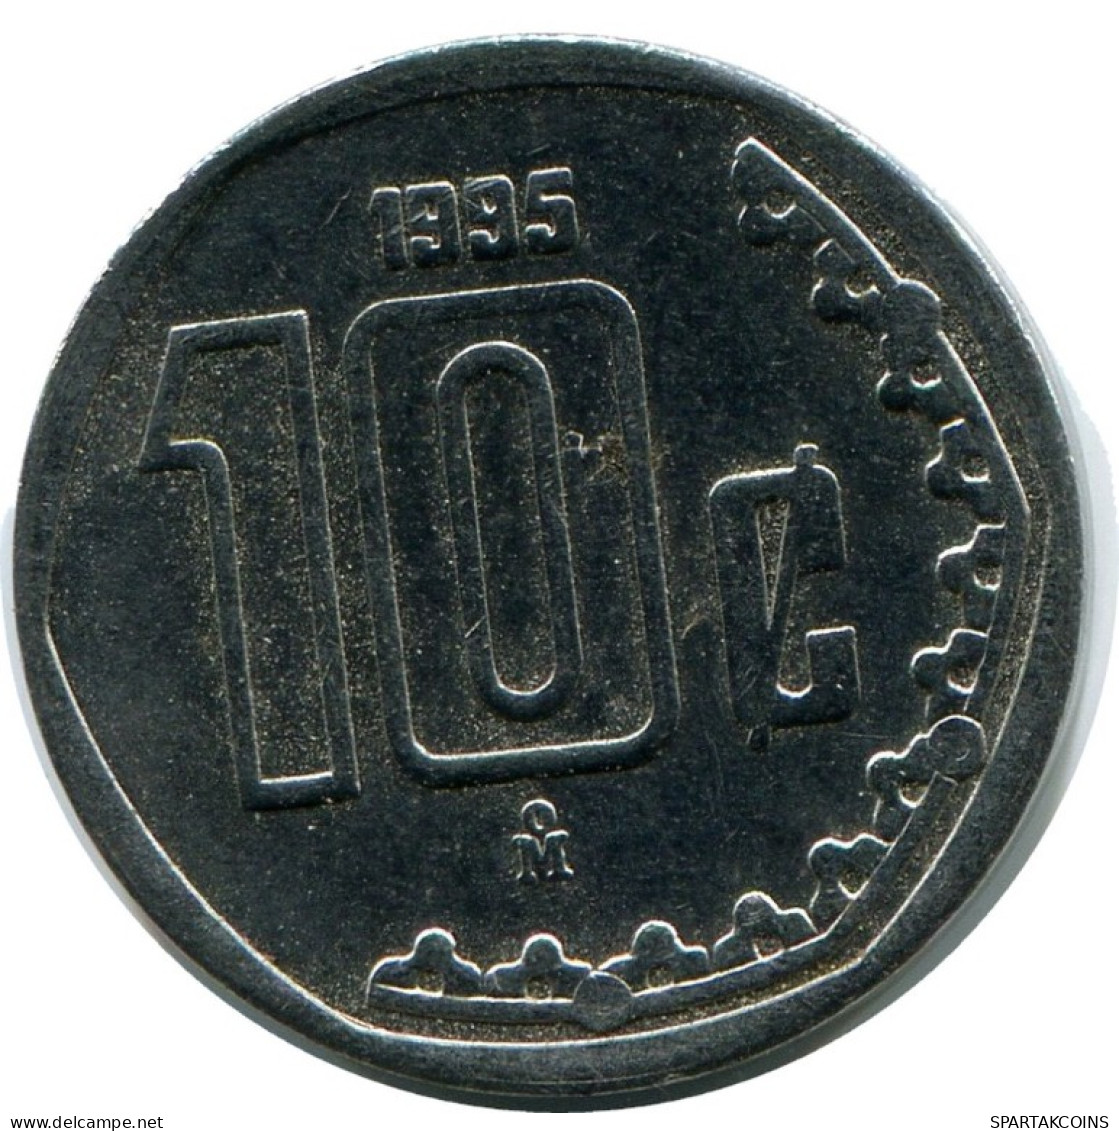 10 CENTAVOS 1995 MEXICO Coin #AH409.5.U.A - Mexiko